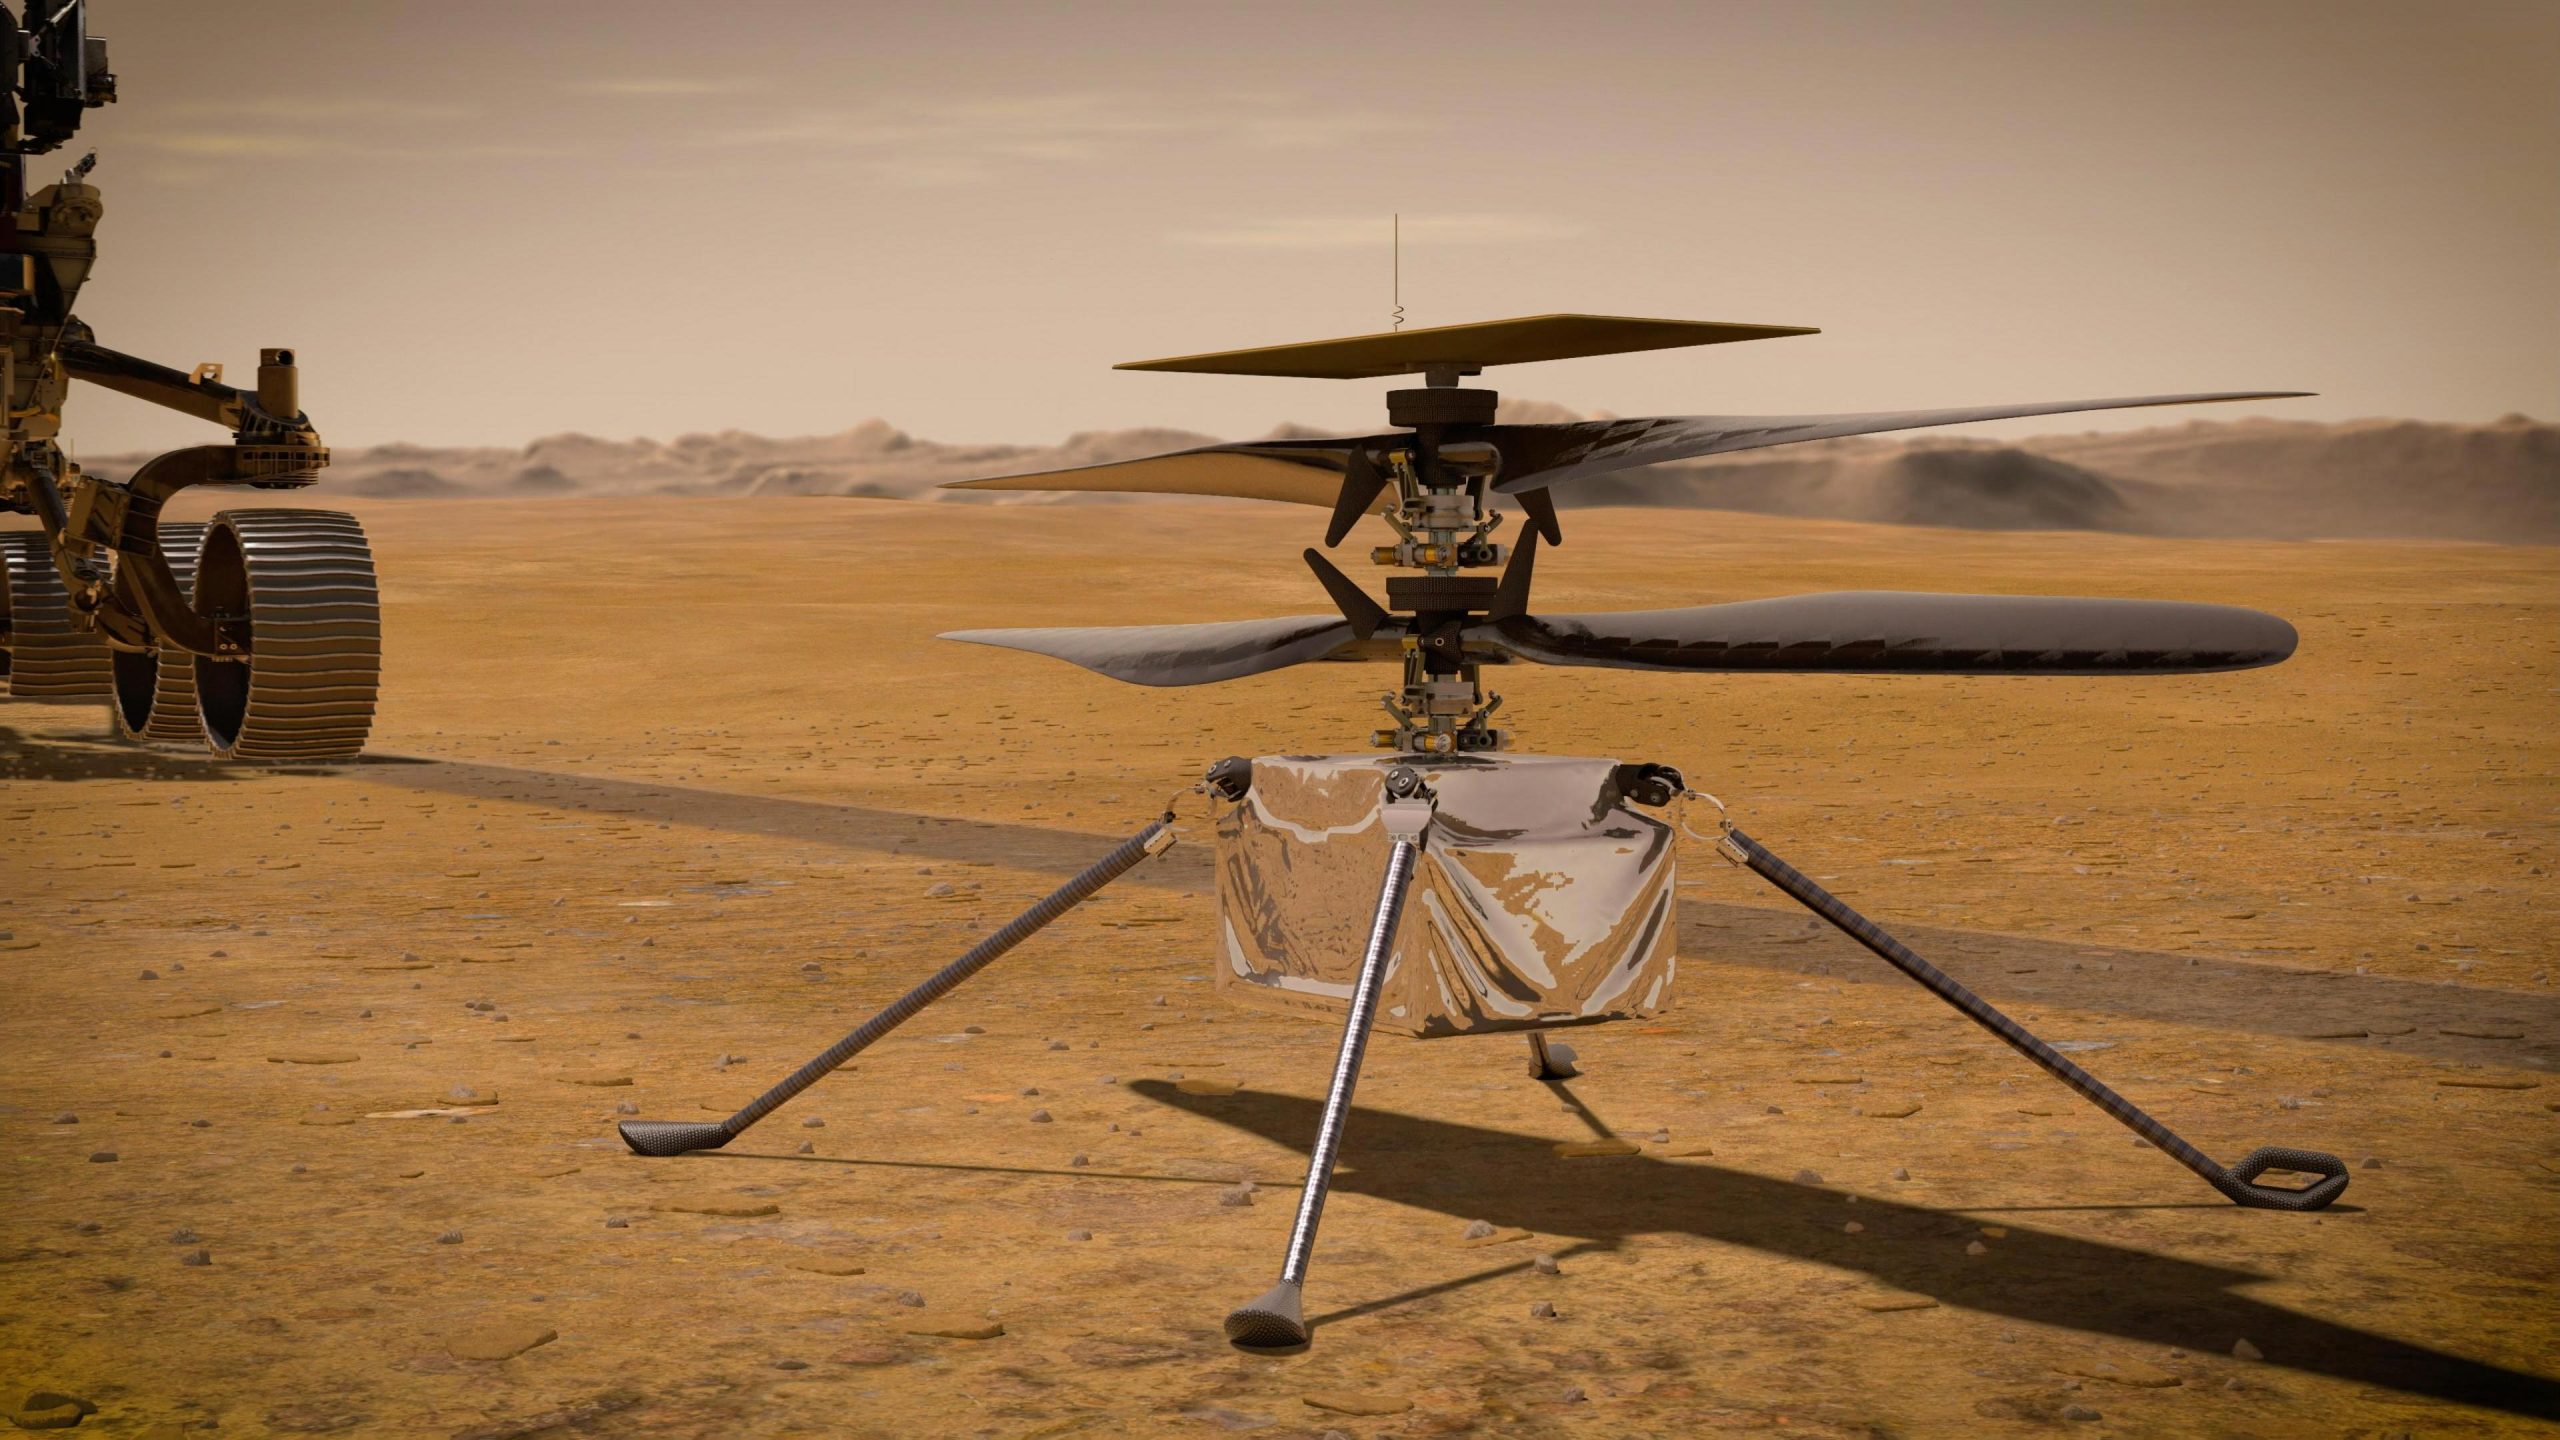 El ingenio realizó su primer vuelo completo en la atmósfera de Marte tras una larga pausa